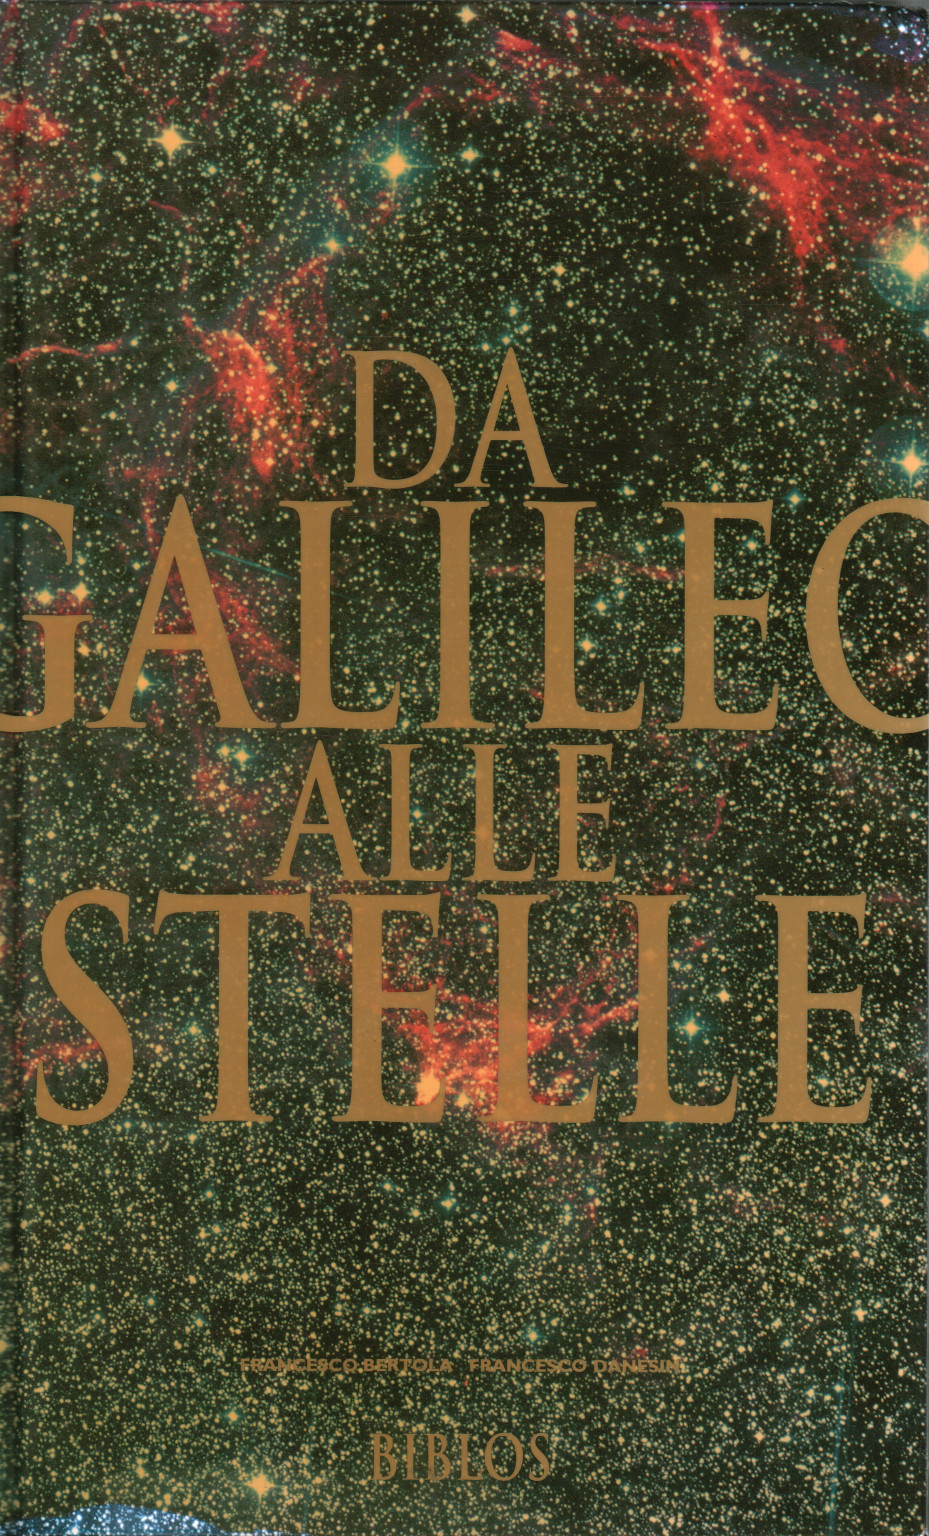 Da Galileo alle stelle, s.a.